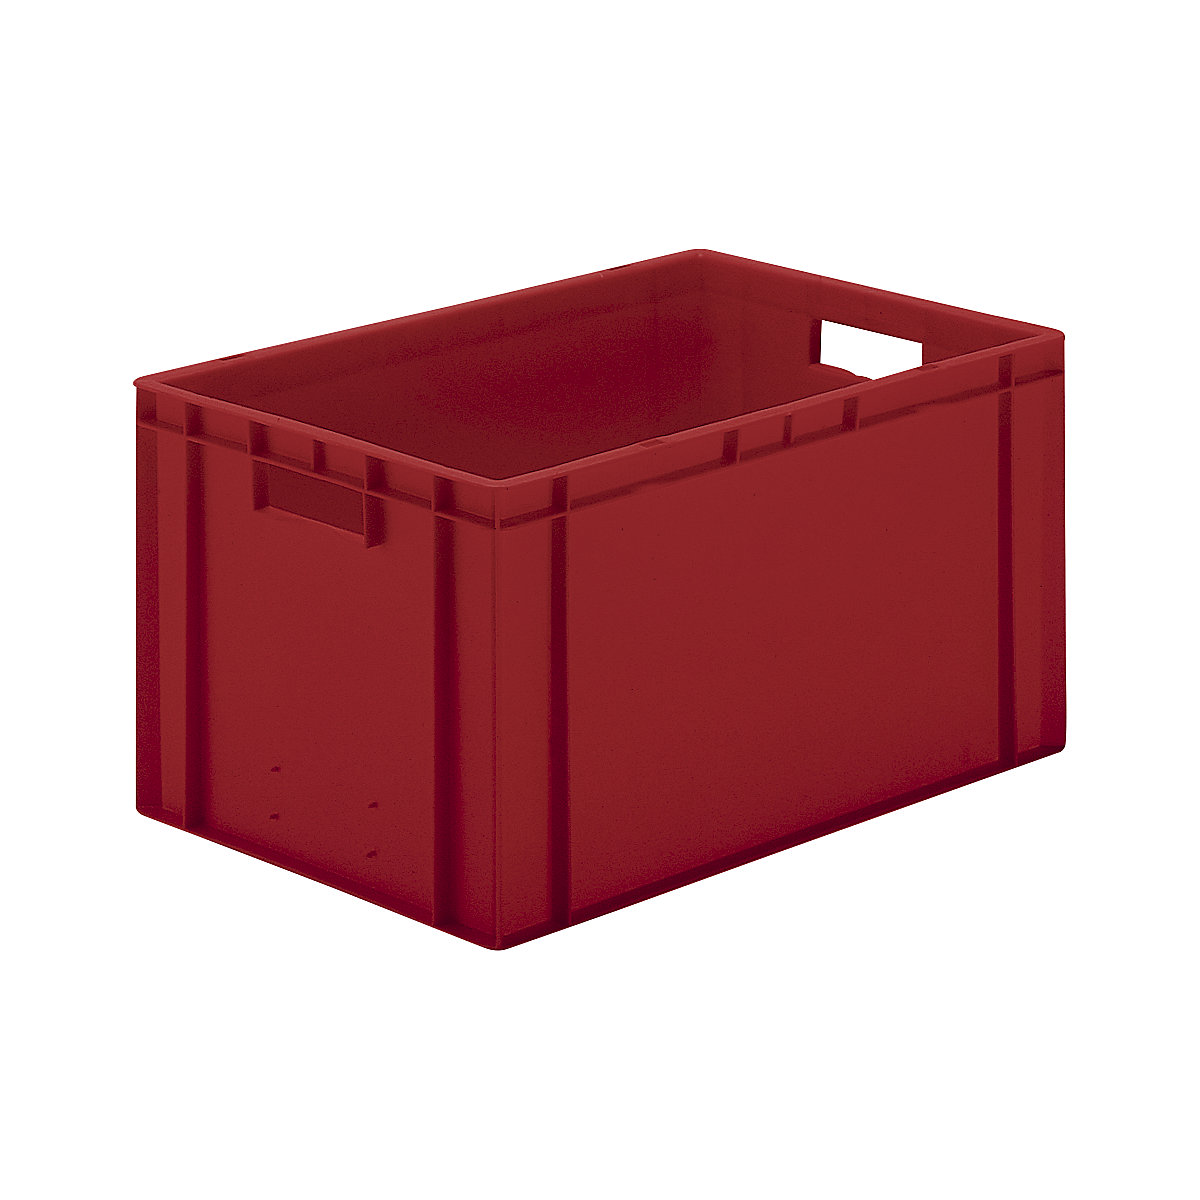 Euro-Format-Stapelbehälter, Wände und Boden geschlossen, LxBxH 600 x 400 x 320 mm, rot, VE 5 Stk